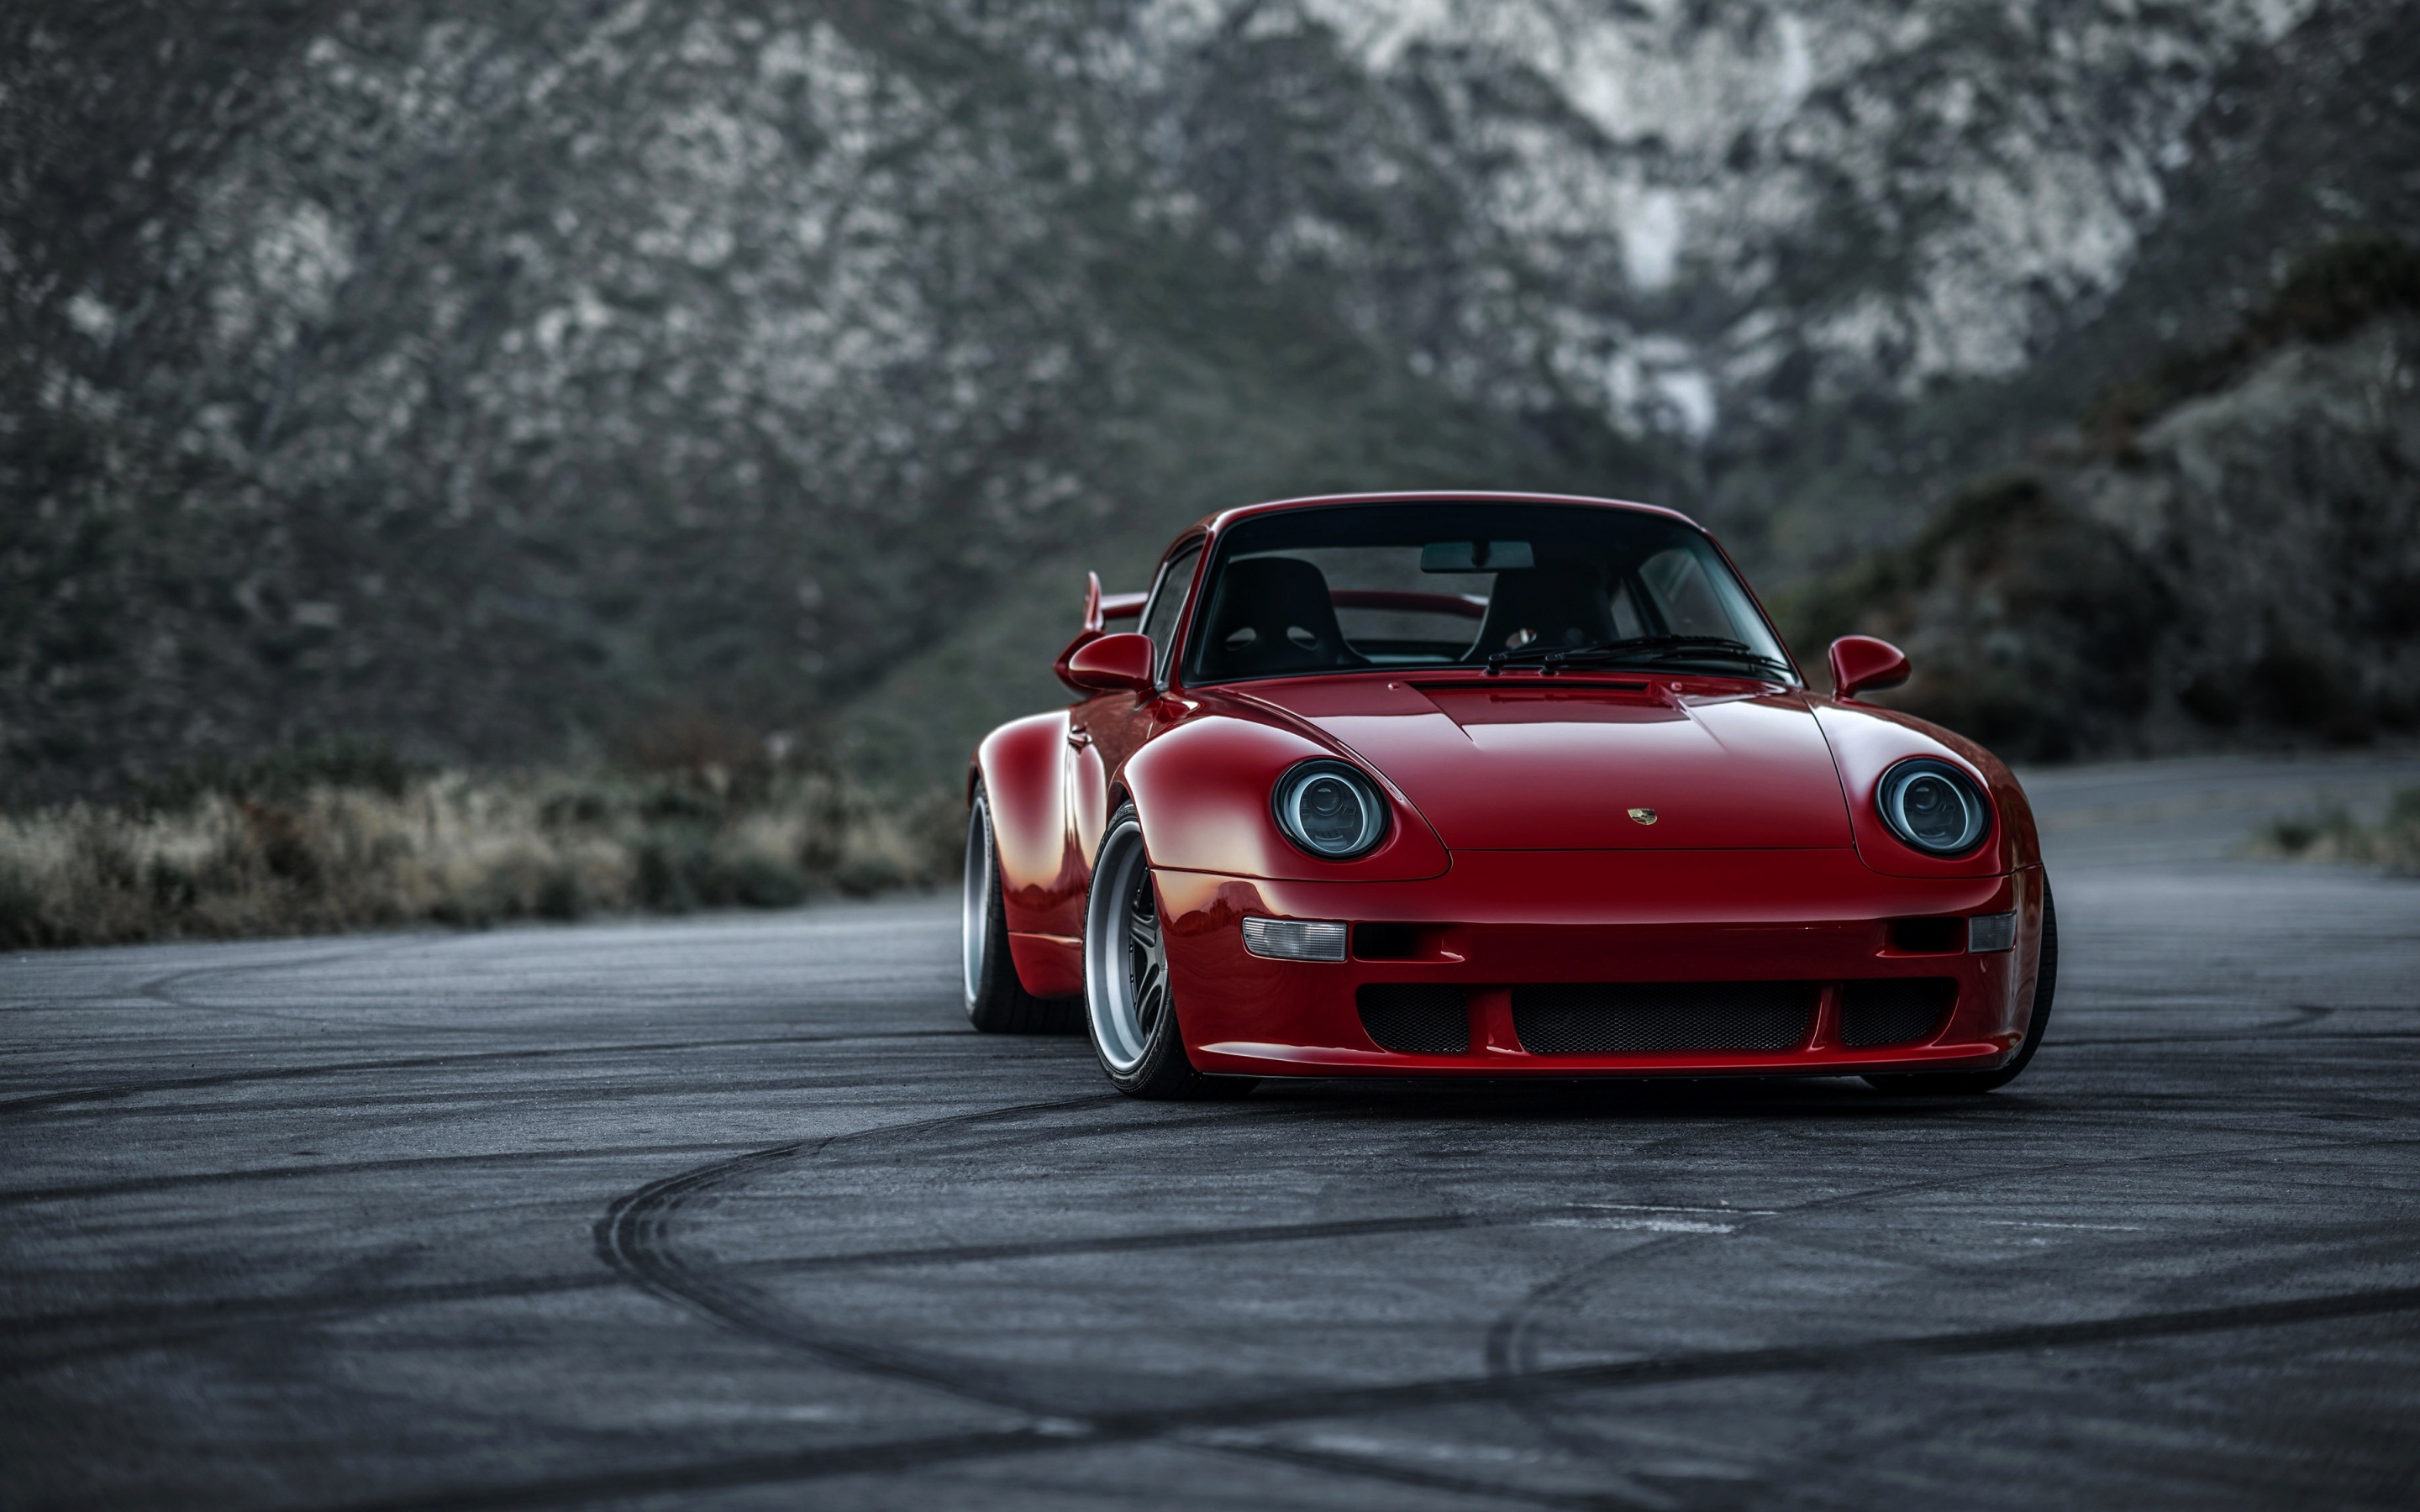 Classic car, red Porsche 911, 2880x1800 wallpaper